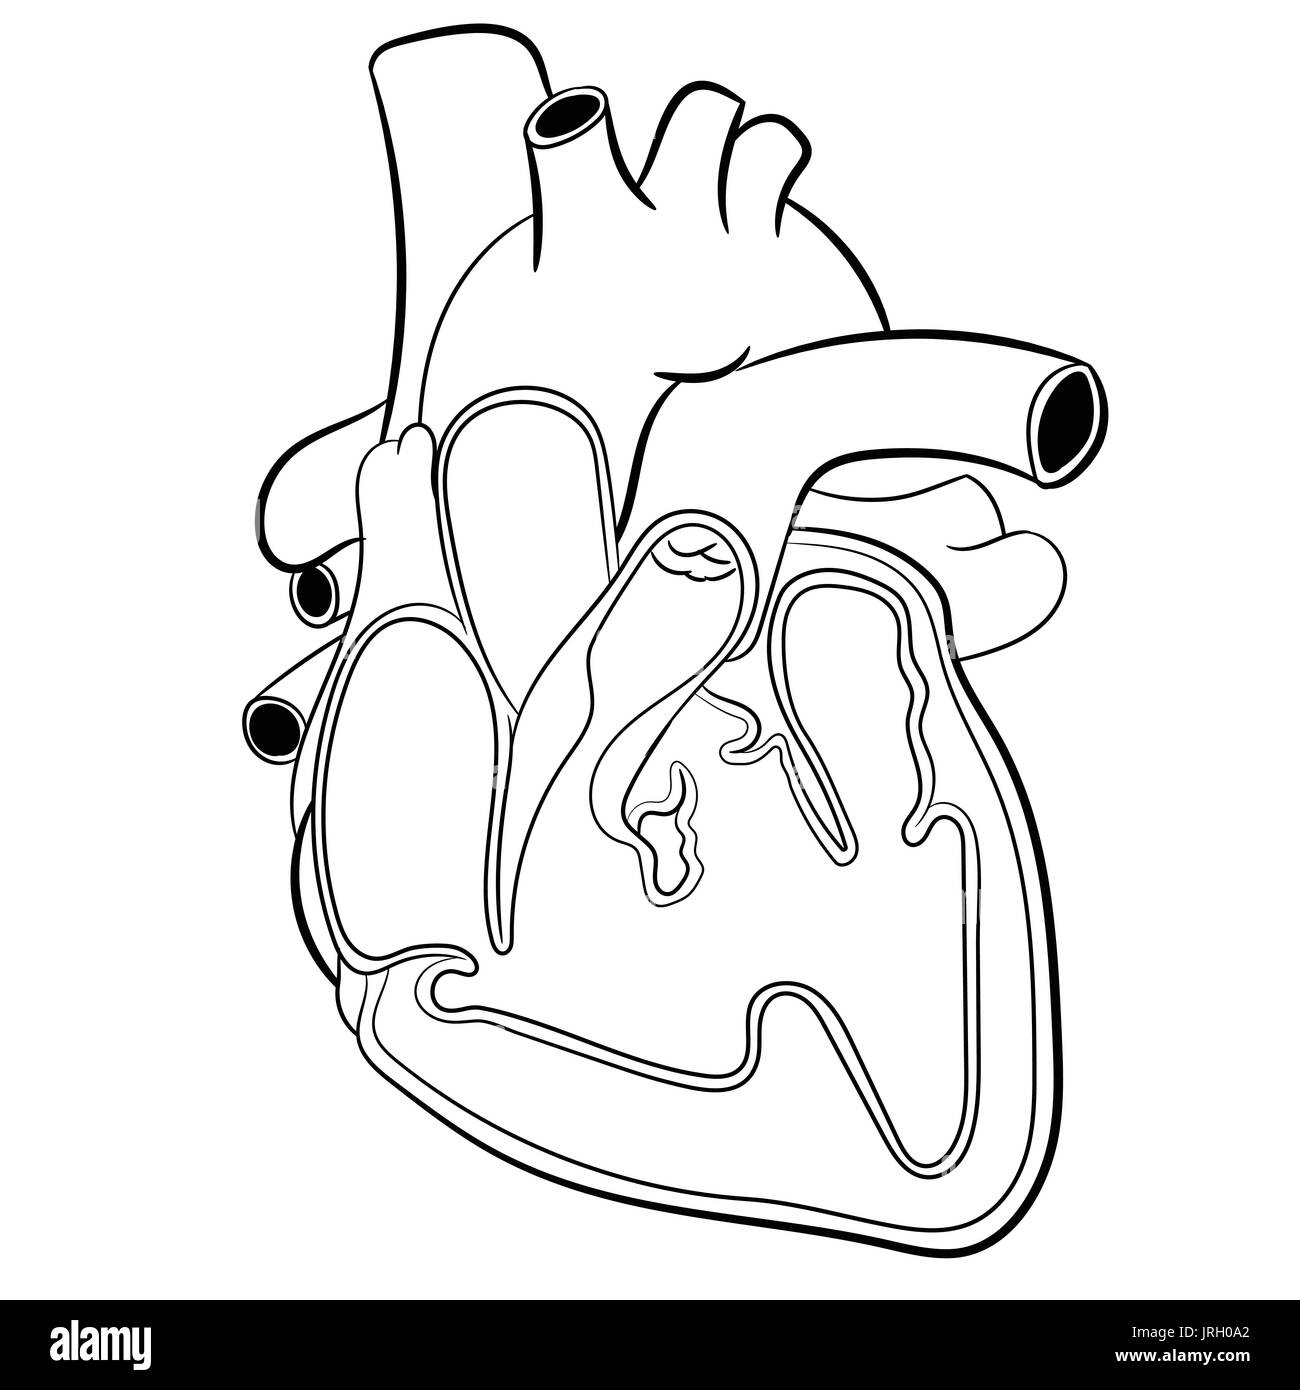 Anatomische Menschenherz Hand gezeichnet. Medizin Bildungs-Vektor-Illustration. Stock Vektor